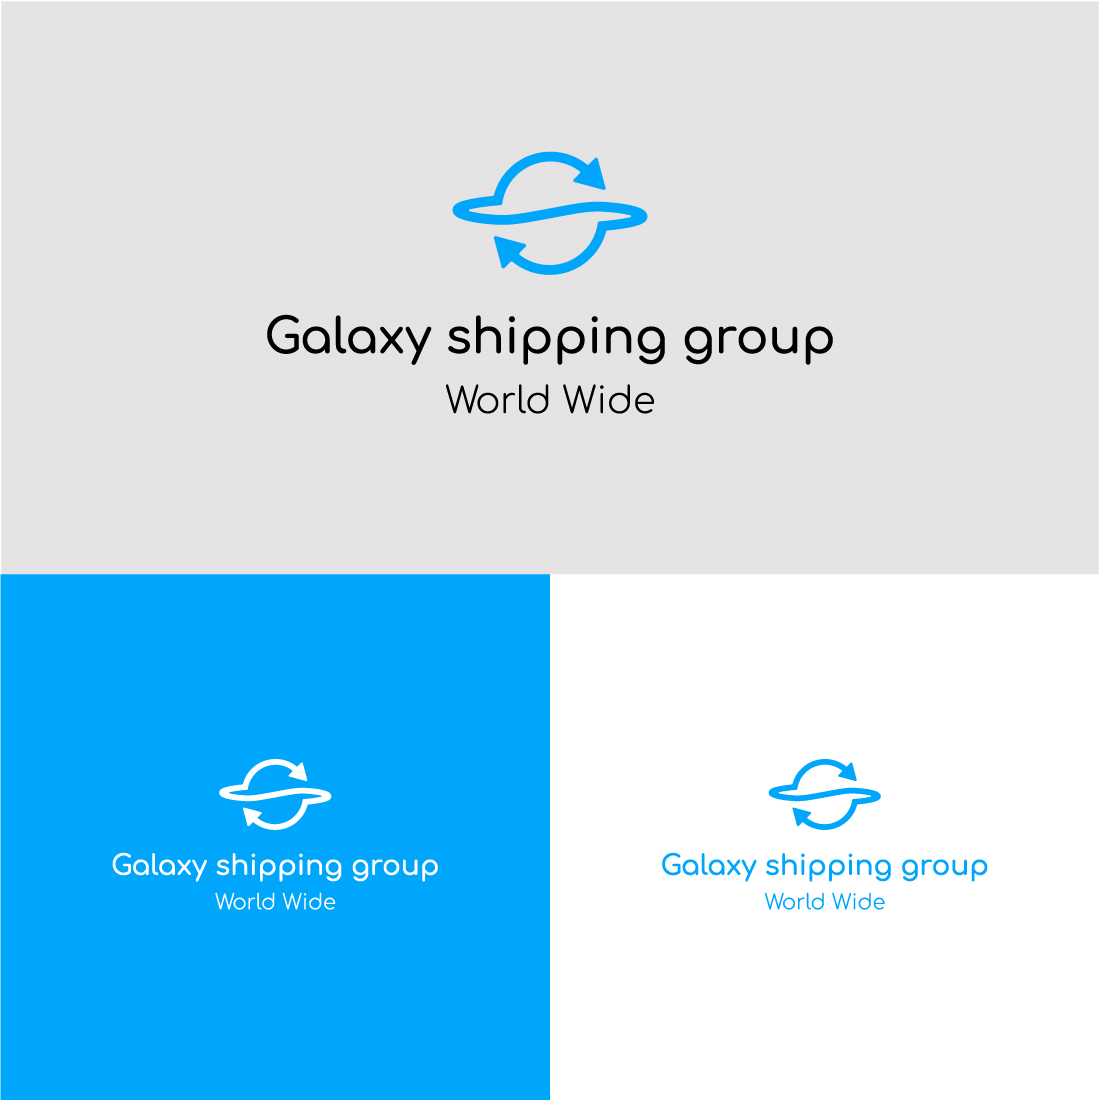 galaxy logo, planet logo, arrow logo cover image.